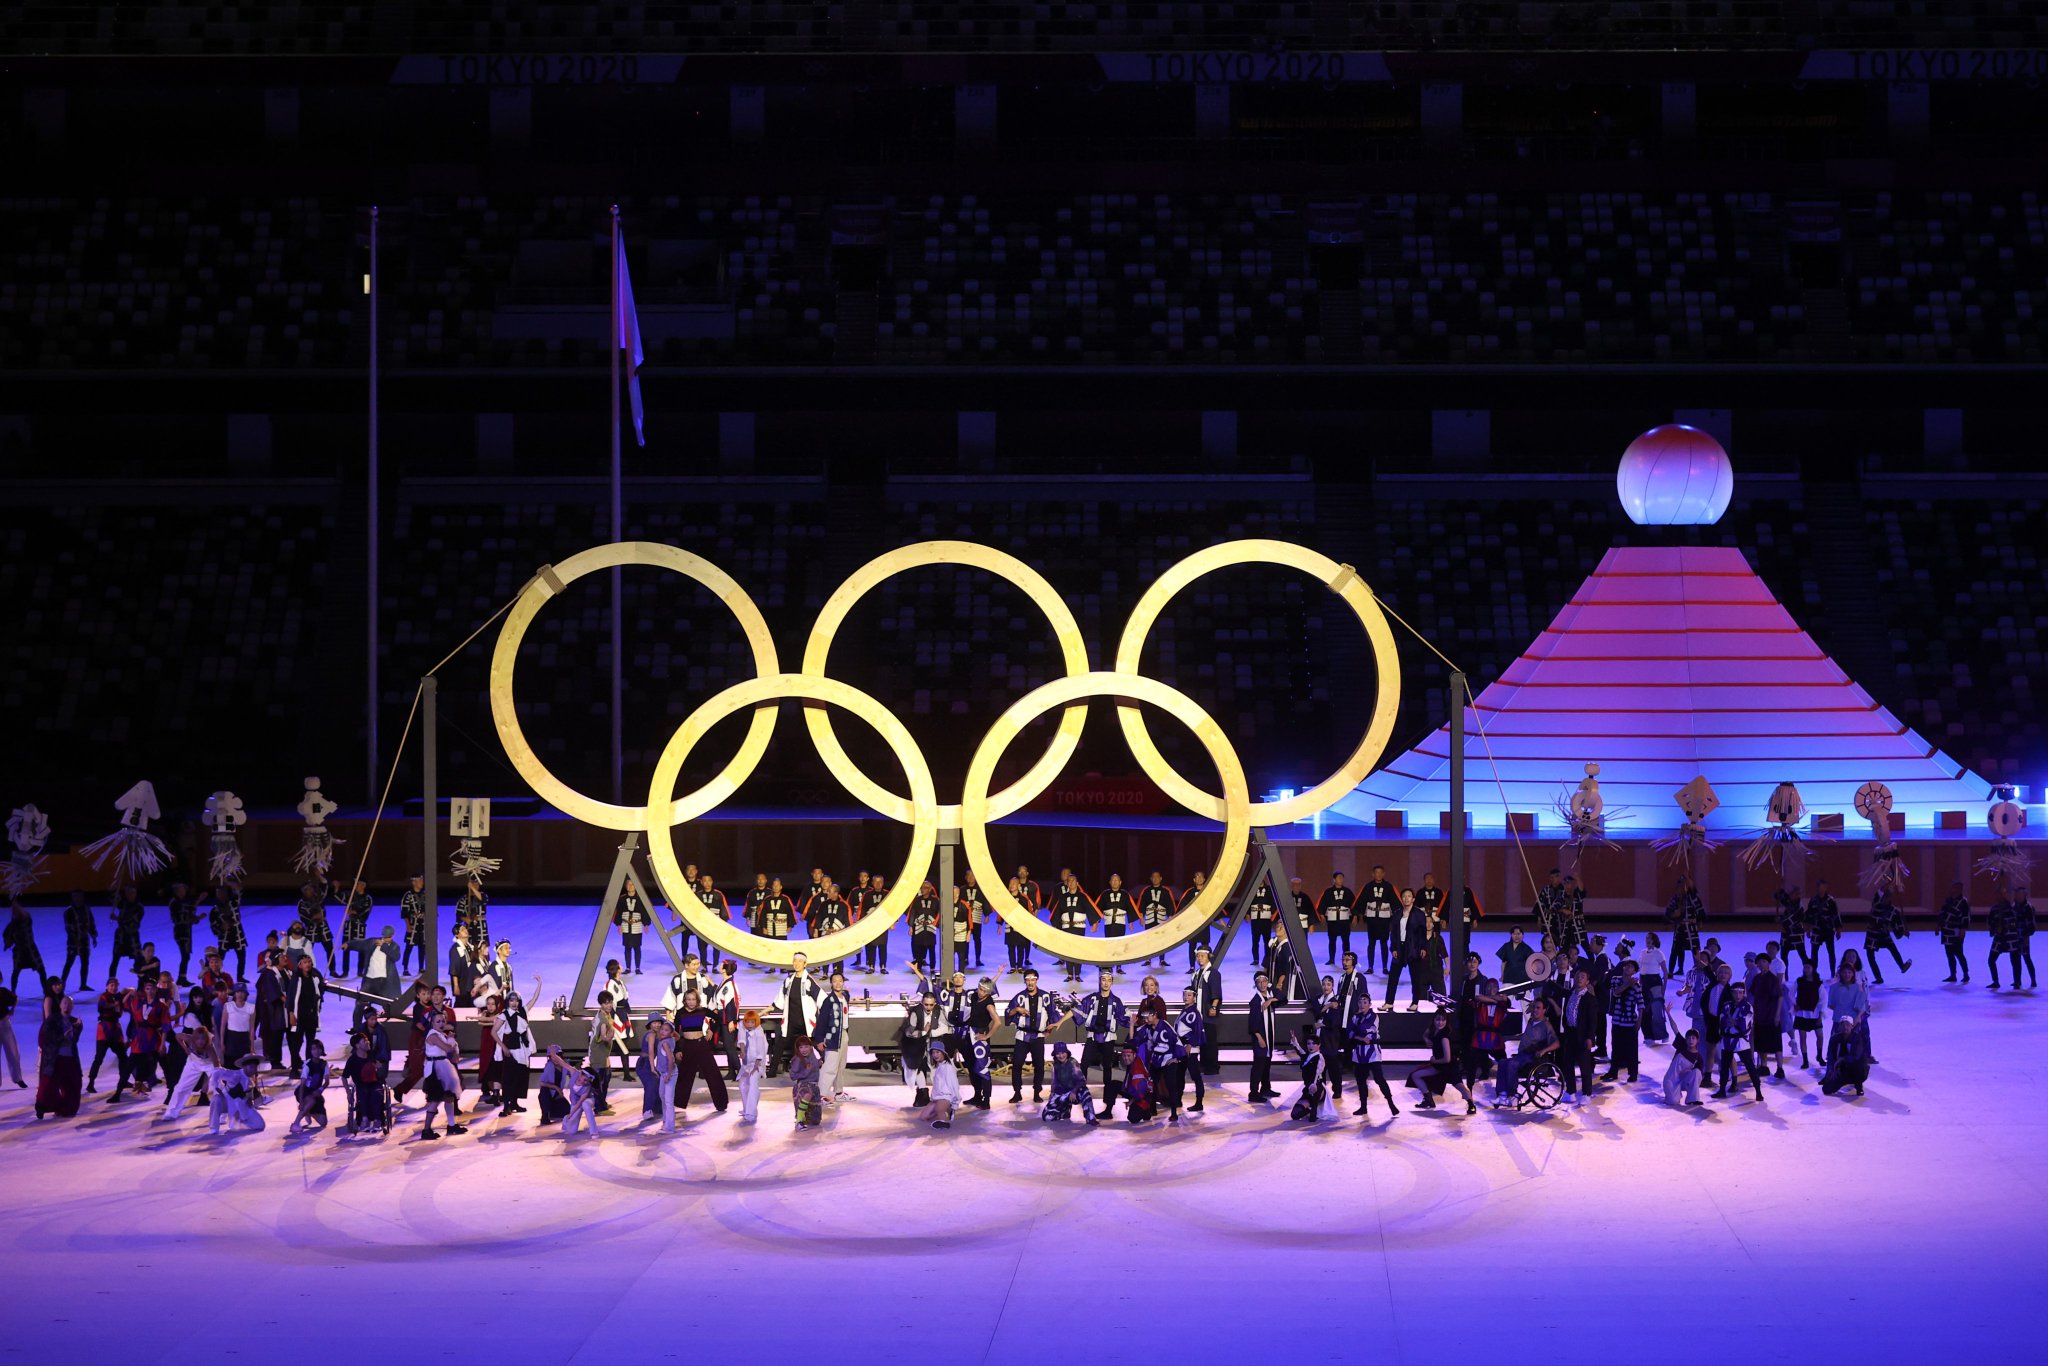 Նախագահ Արմեն Սարգսյանը ներկա է գտնվել Տոկիոյի ամառային օլիմպիական խաղերի բացմանը 